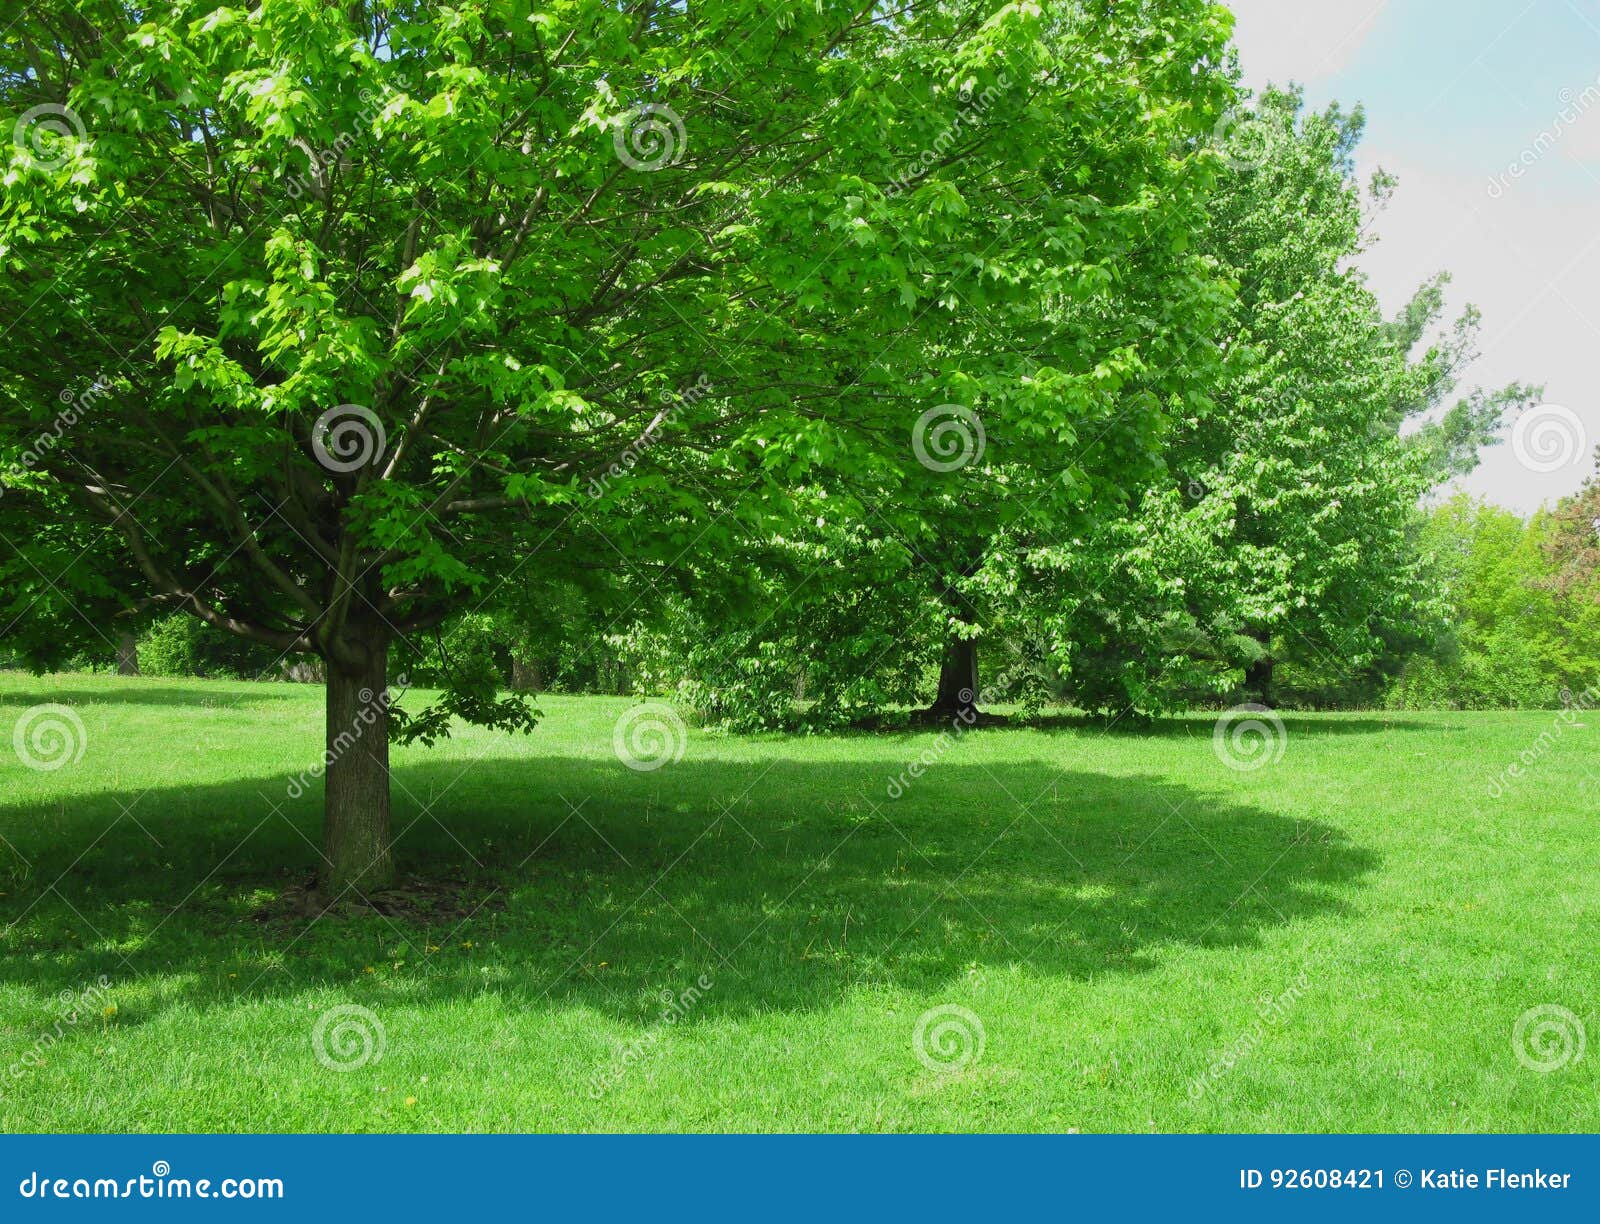 shade tree